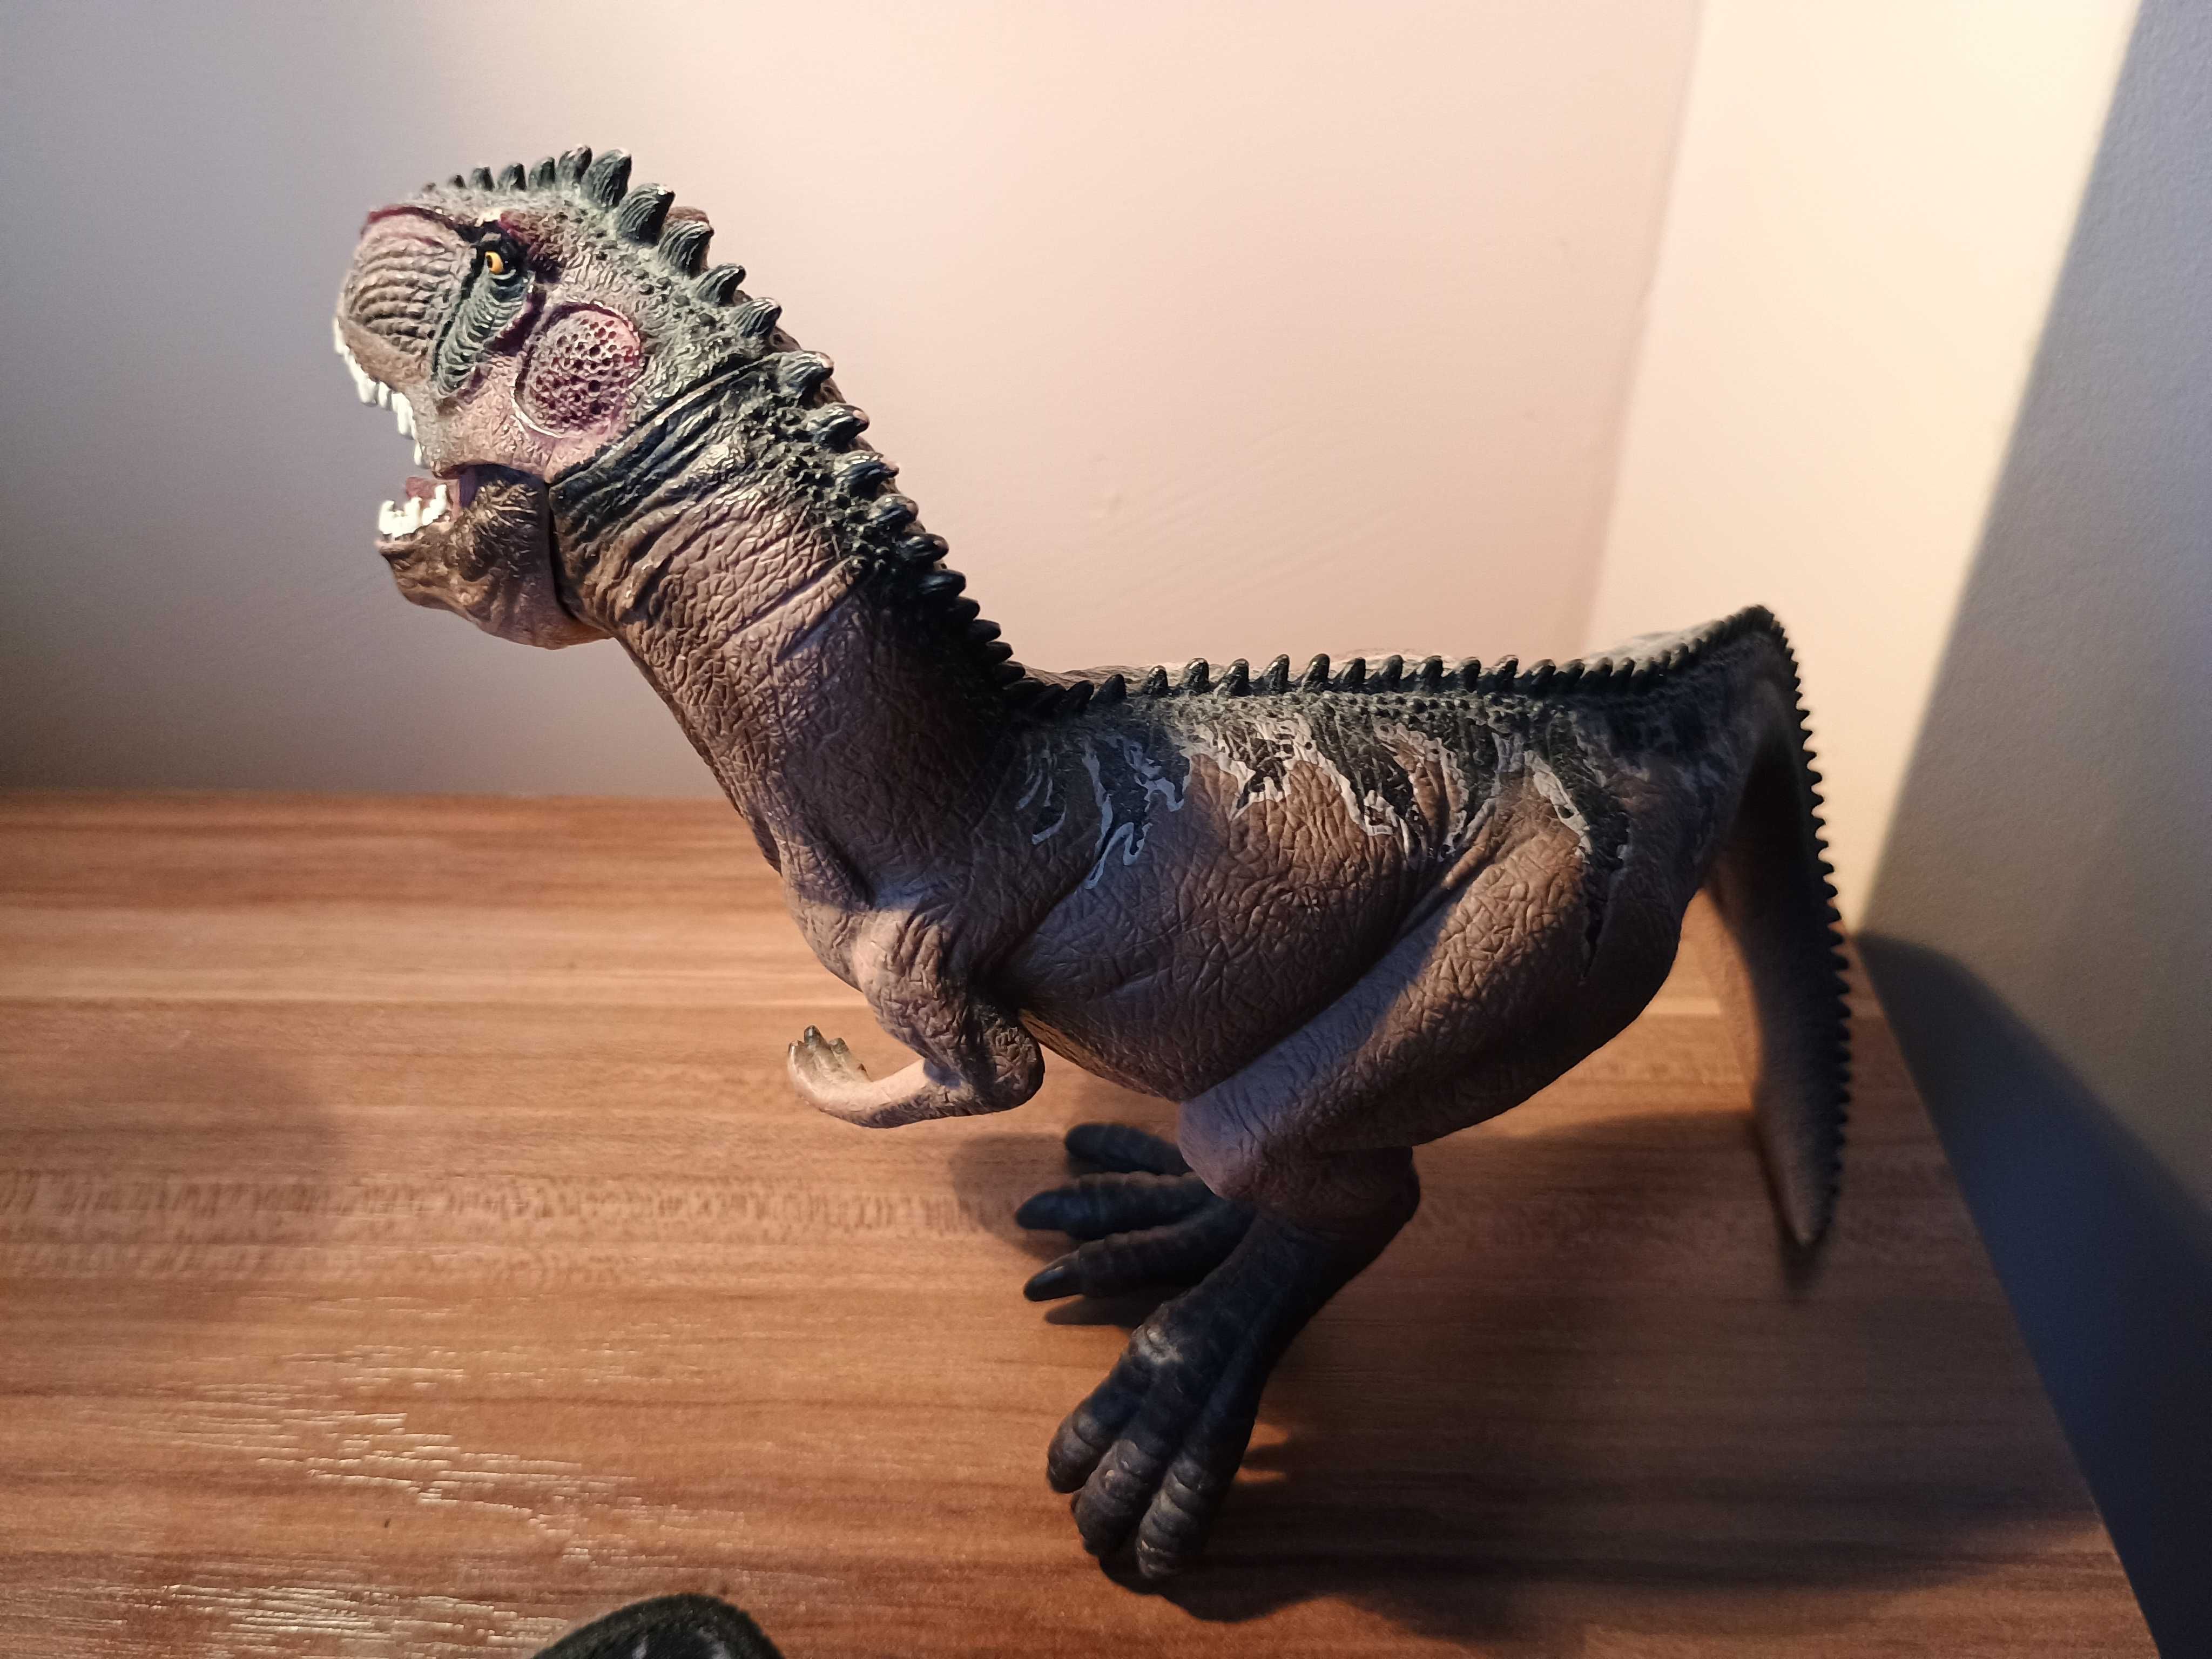 PAPO 2007 Jurassic World SPINOSAURUS Dinosaur Figurine